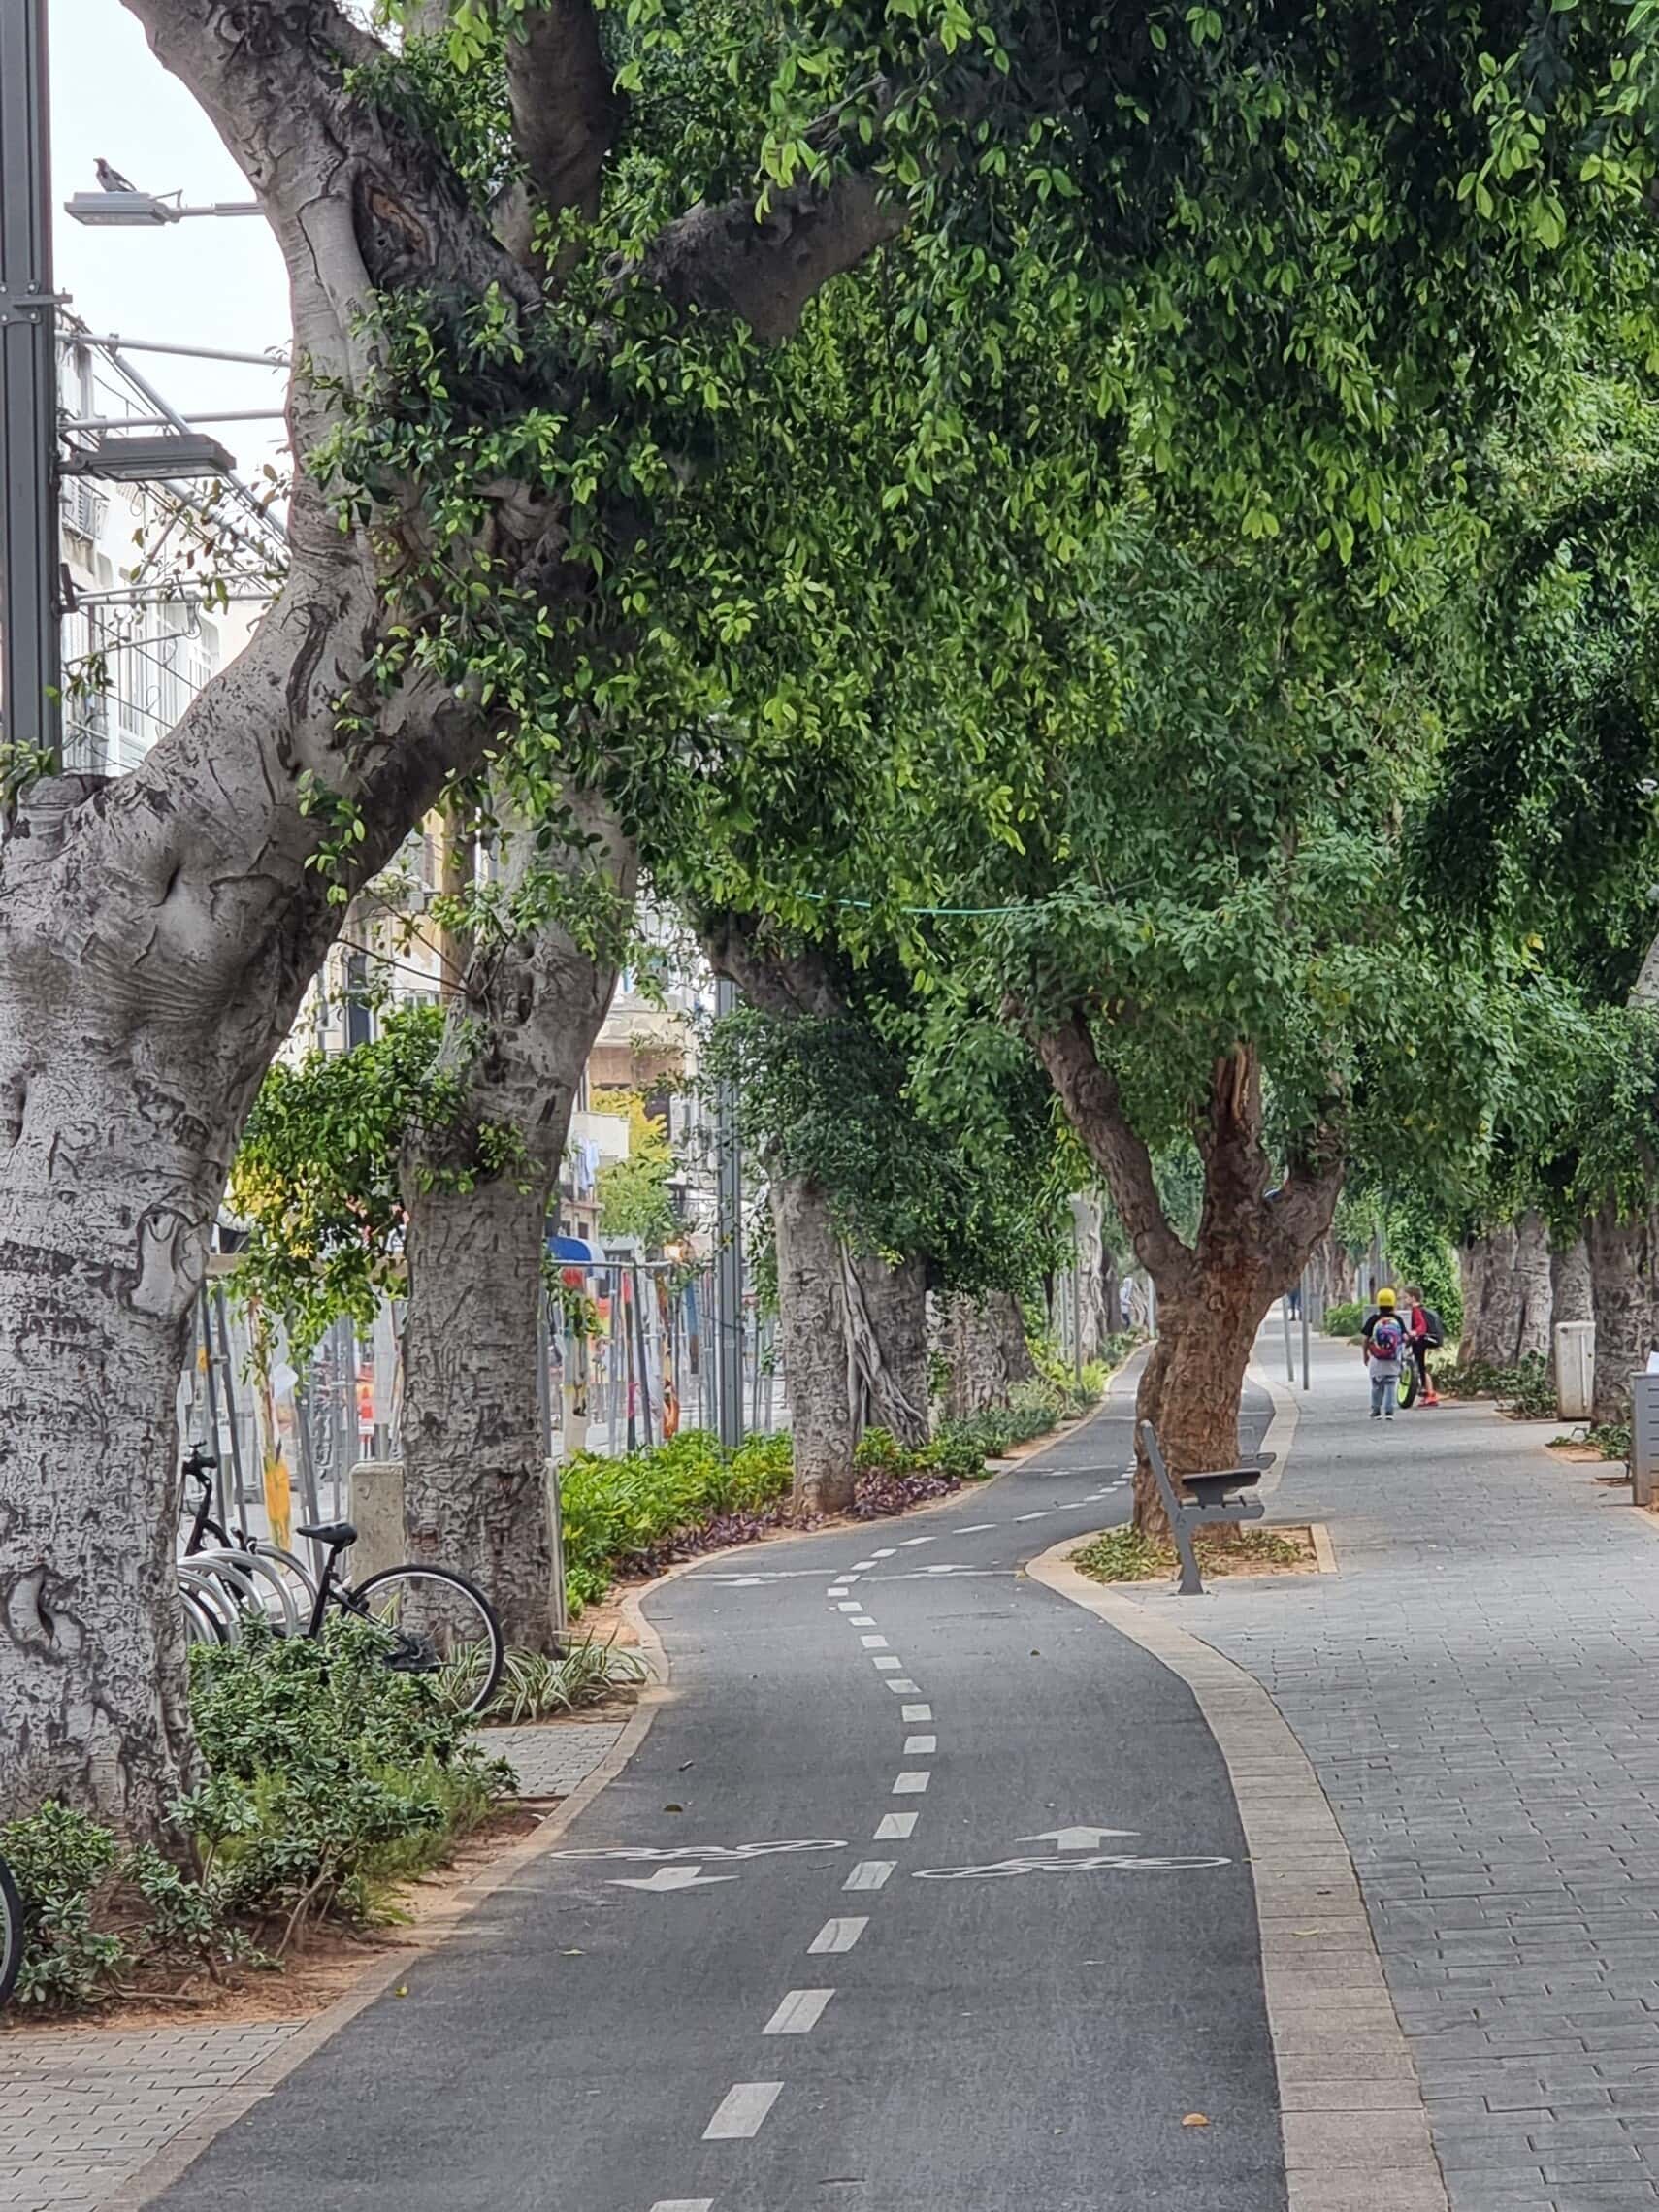 שדרות ירושלים, דצמבר 2021: איפה שיש שביל אופניים &#8211; הוא יפה להפליא (צילום: אביב לביא)